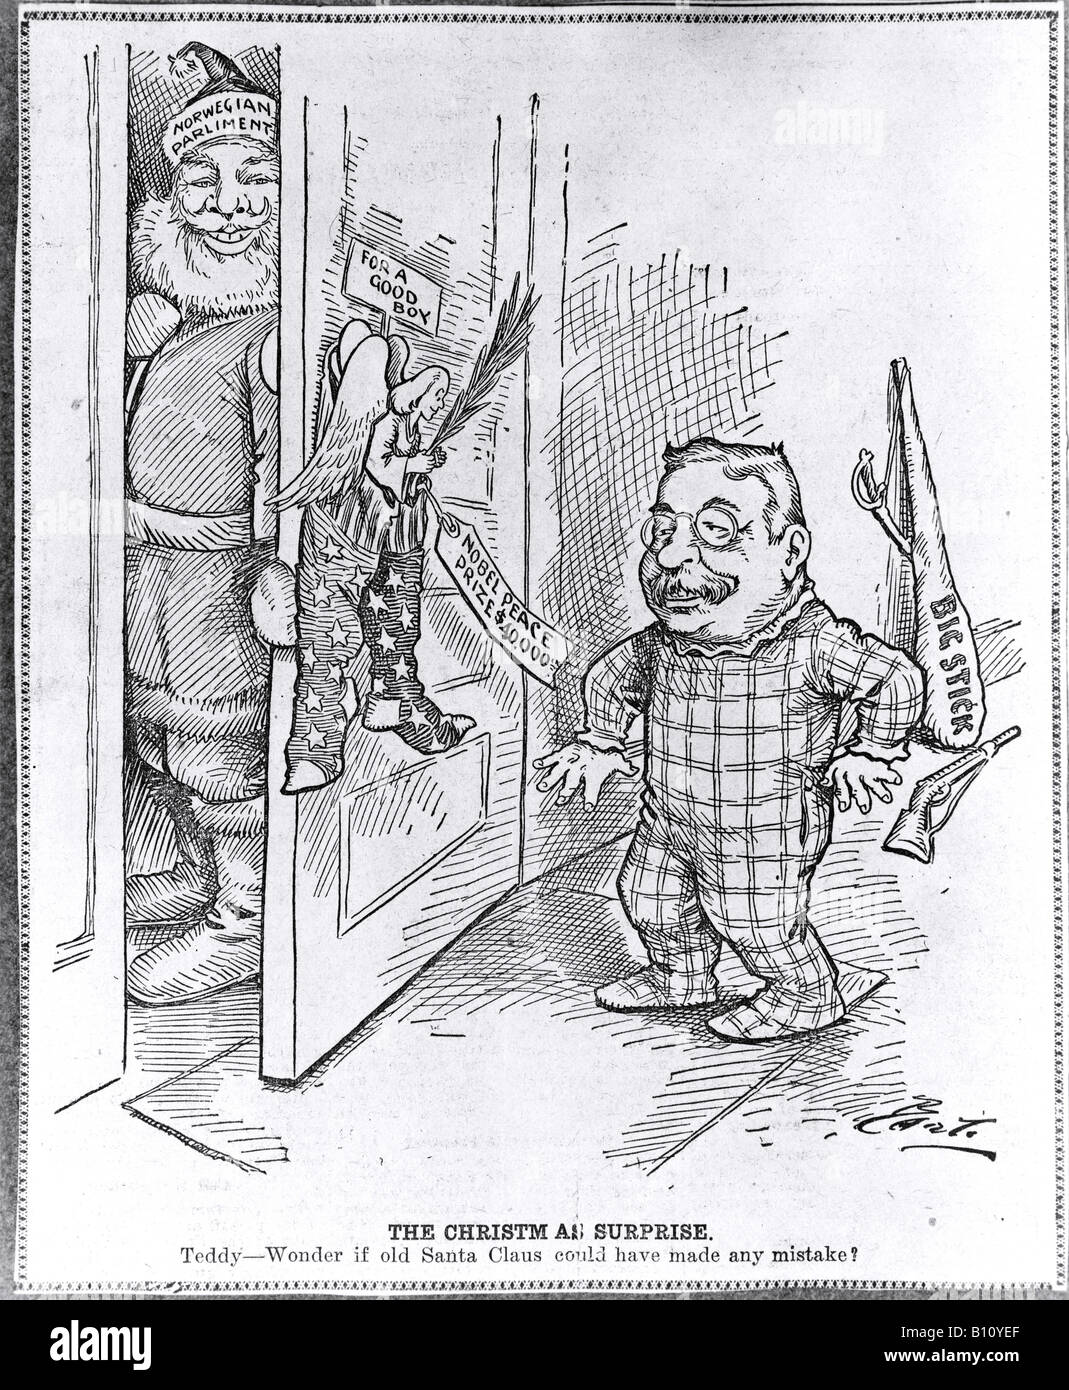 La sorpresa de Navidad una caricatura política relativa a Theodore Roosevelt y el Premio Nobel de la paz. Foto de stock